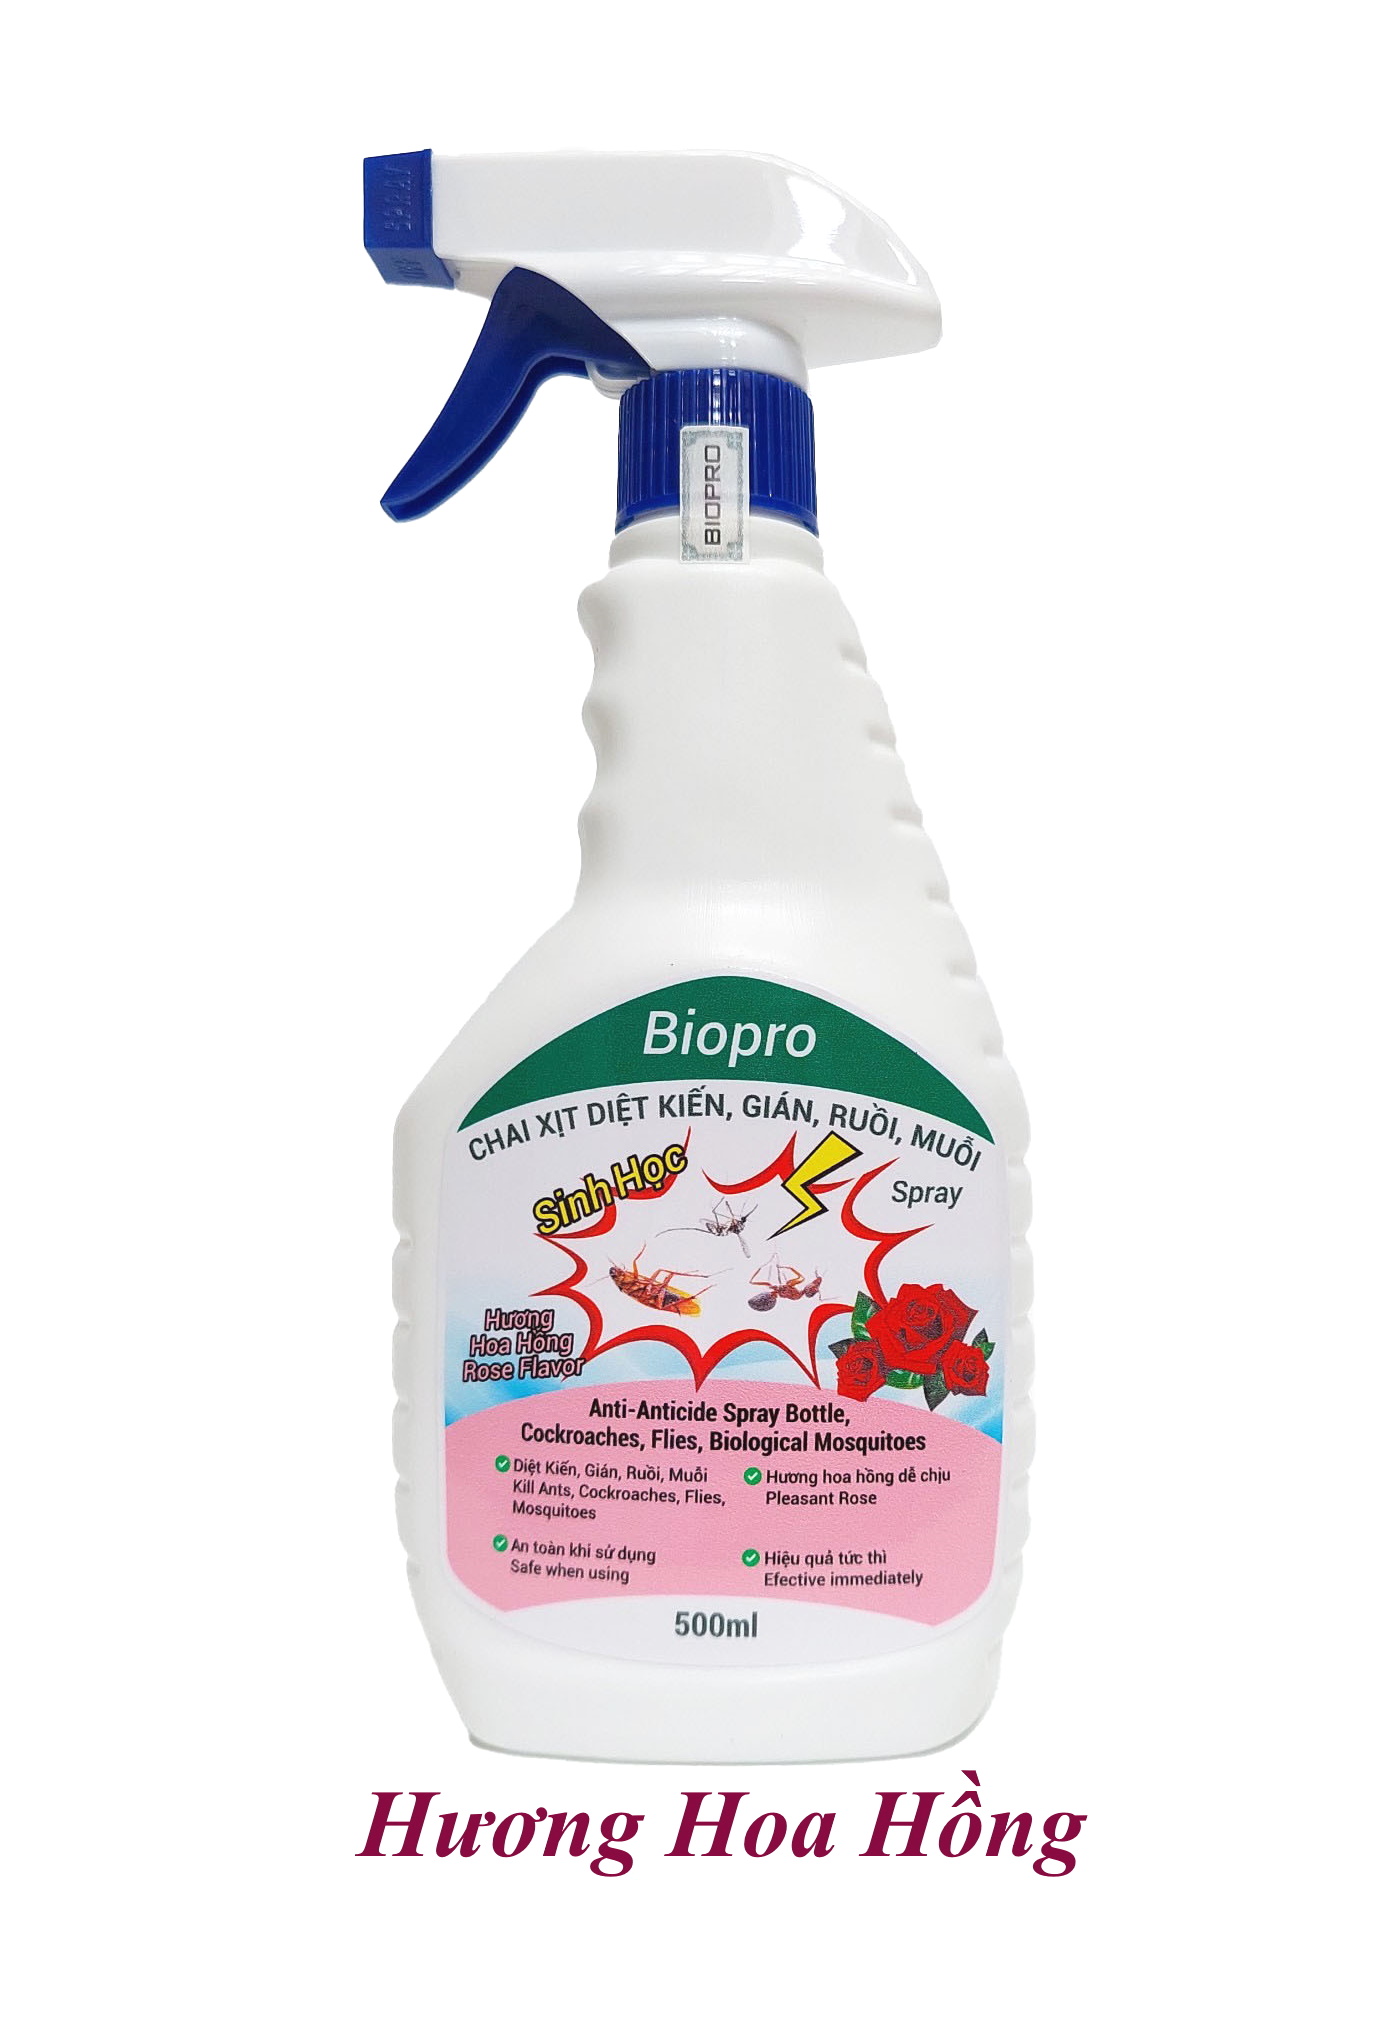 Thuốc xịt sinh học Diệt kiến Diệt gián Diệt ruồi Diệt muỗi Biopro Hương hoa hồng dịu nhẹ, an toàn, hiệu quả dài lâu